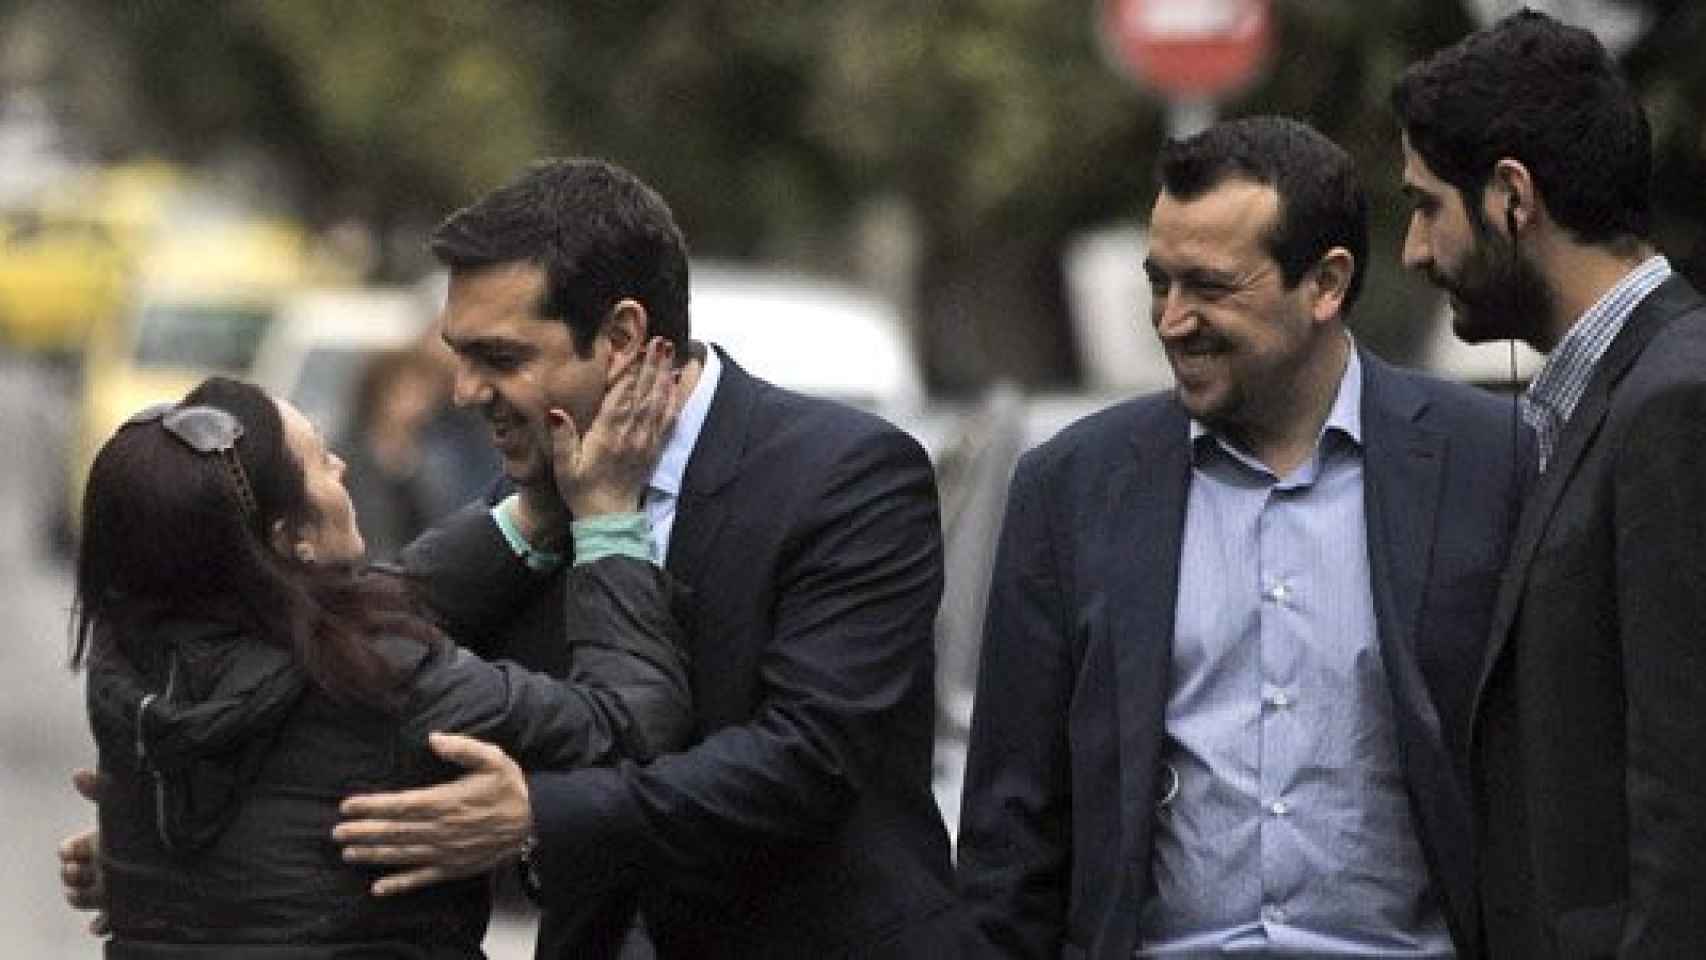 El primer ministro heleno, Alexis Tsipras (segundo por la izquierda), recibe el abrazo de una ciudadana en una imagen de archivo